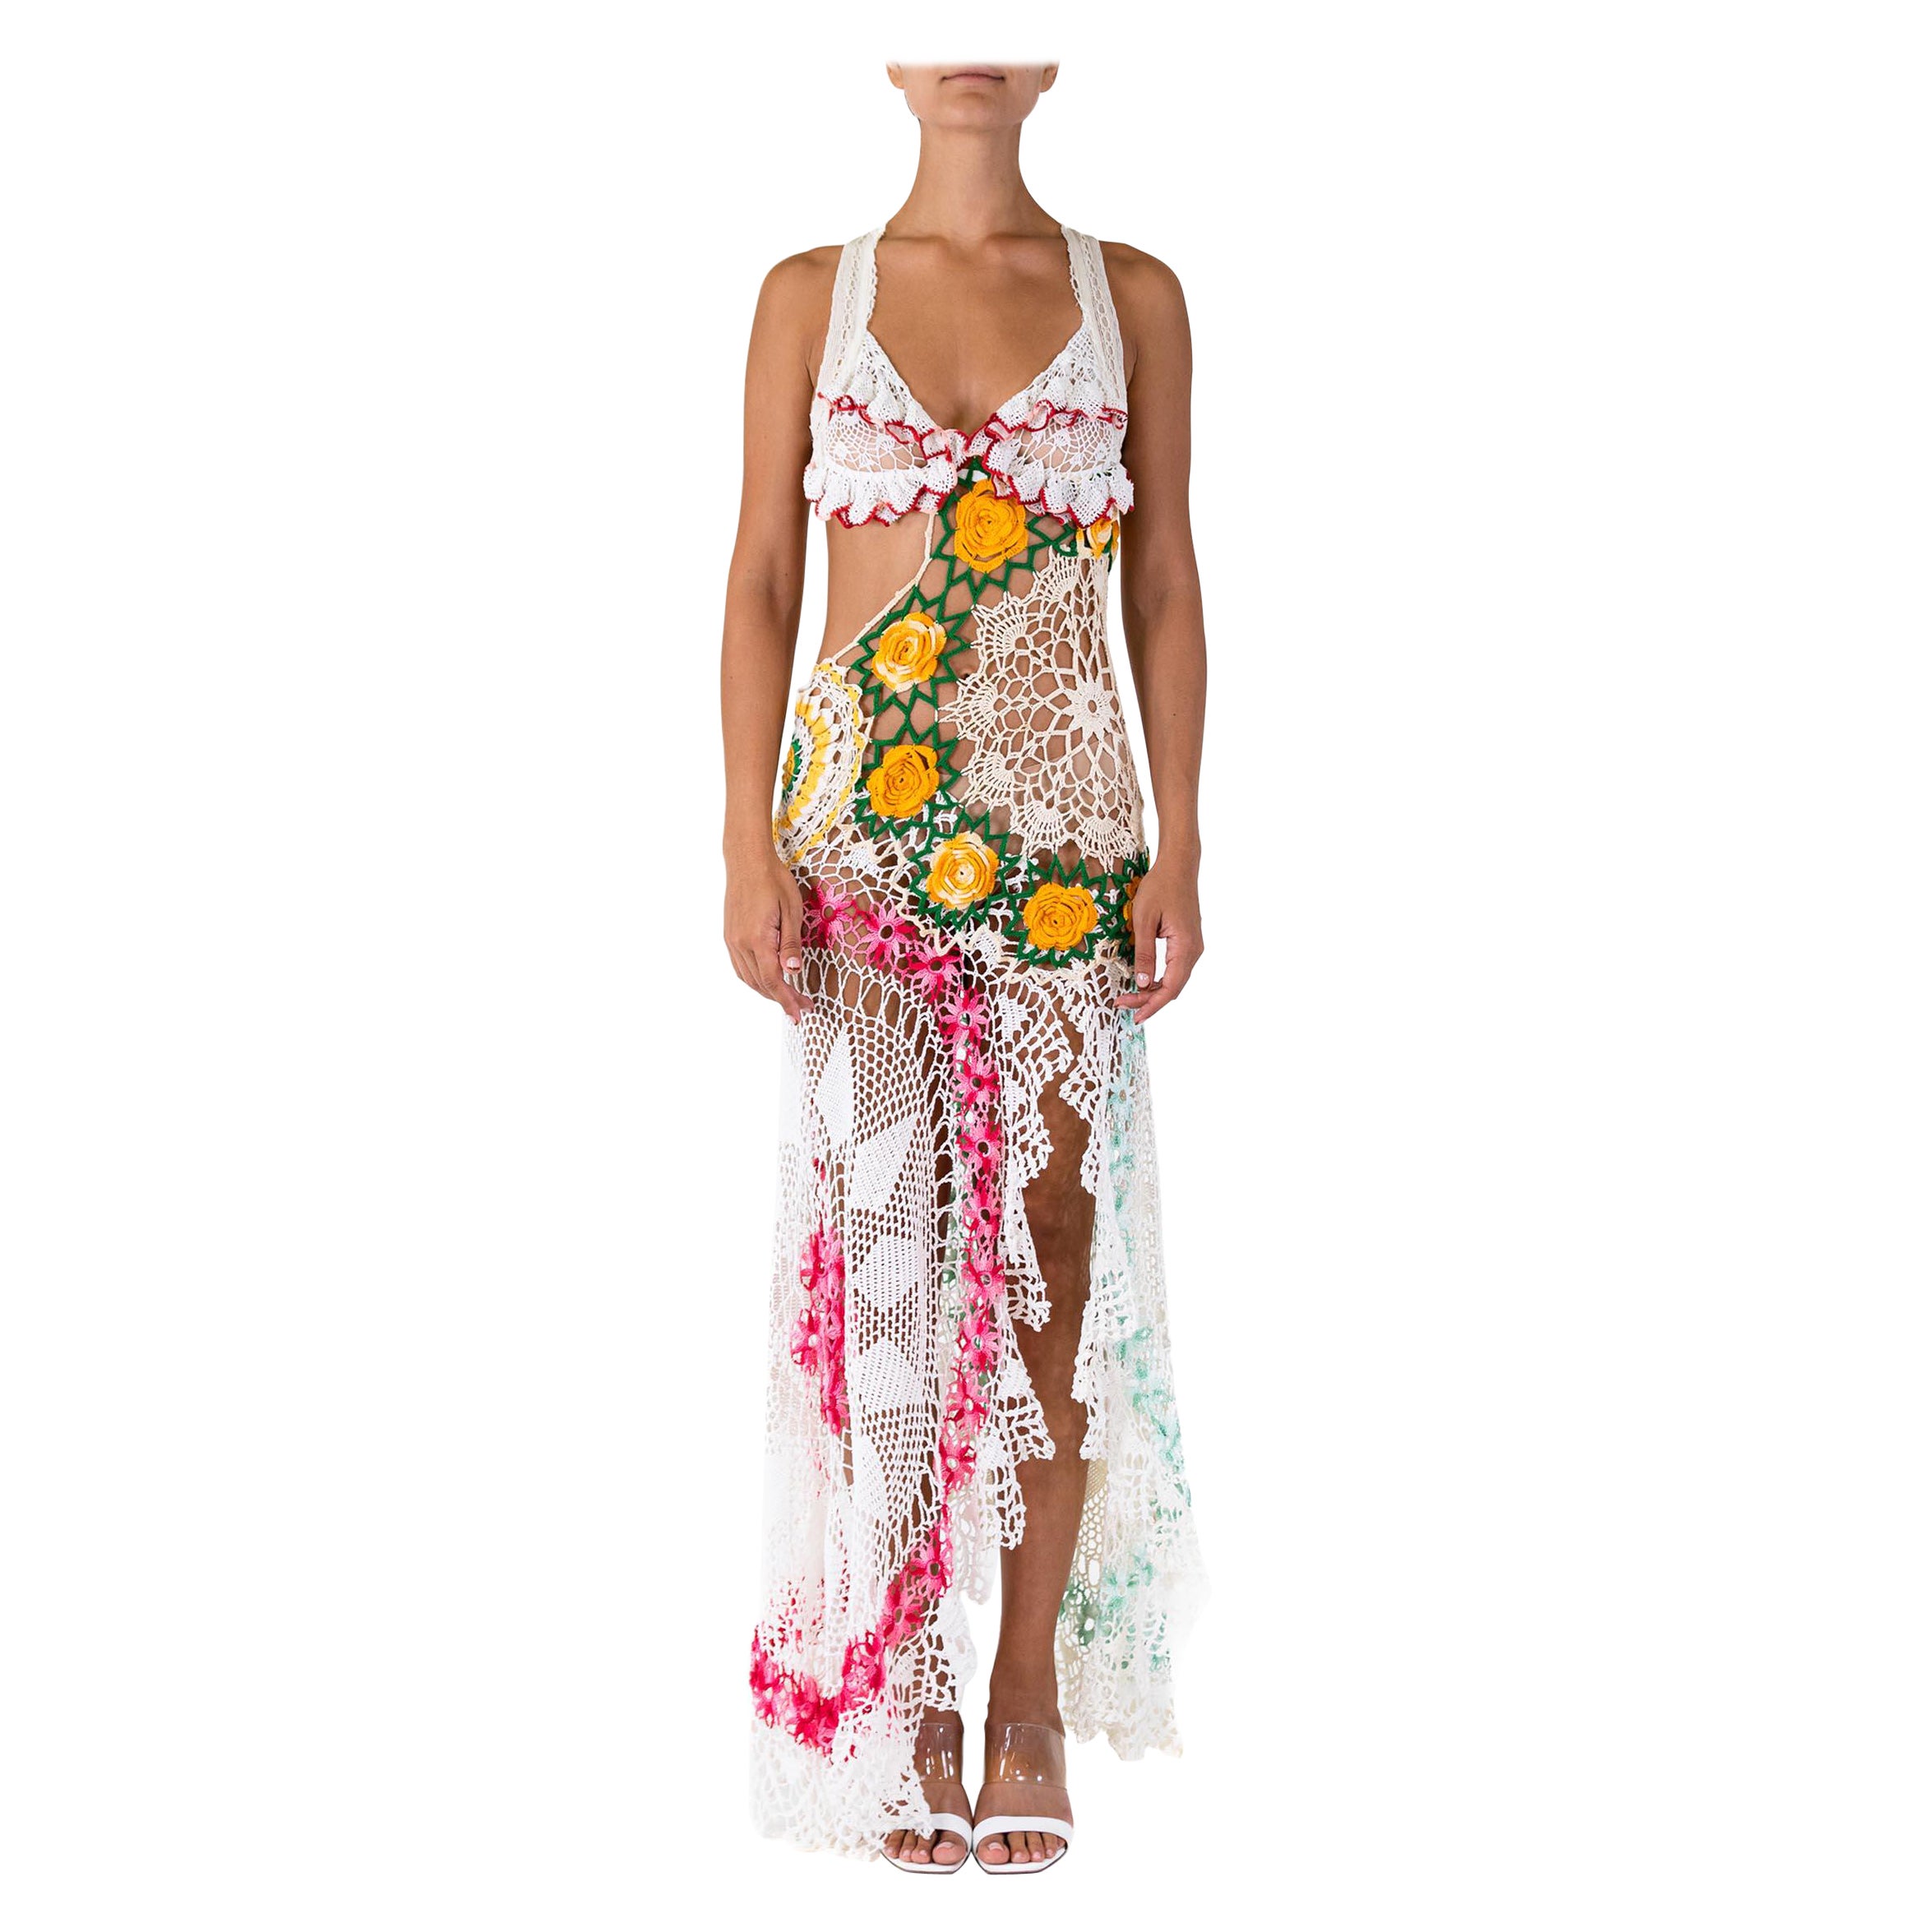 MORPHEW COLLECTION Multicolor Cotton Crochet Long Vintage Doily Dress